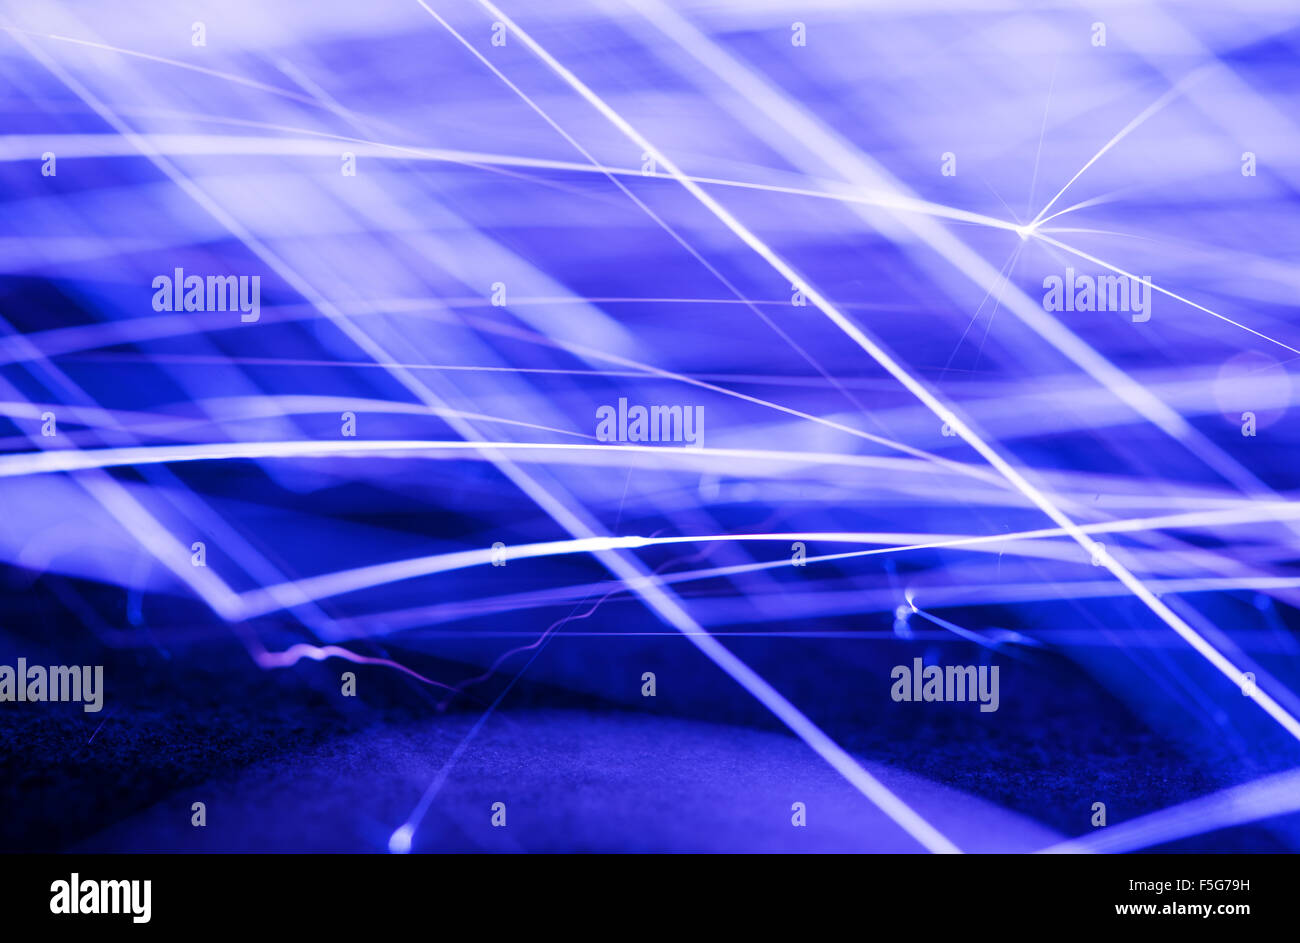 Fluente scintille, foto con una bassa velocità dell'otturatore, blu colorato sfondo astratto Foto Stock